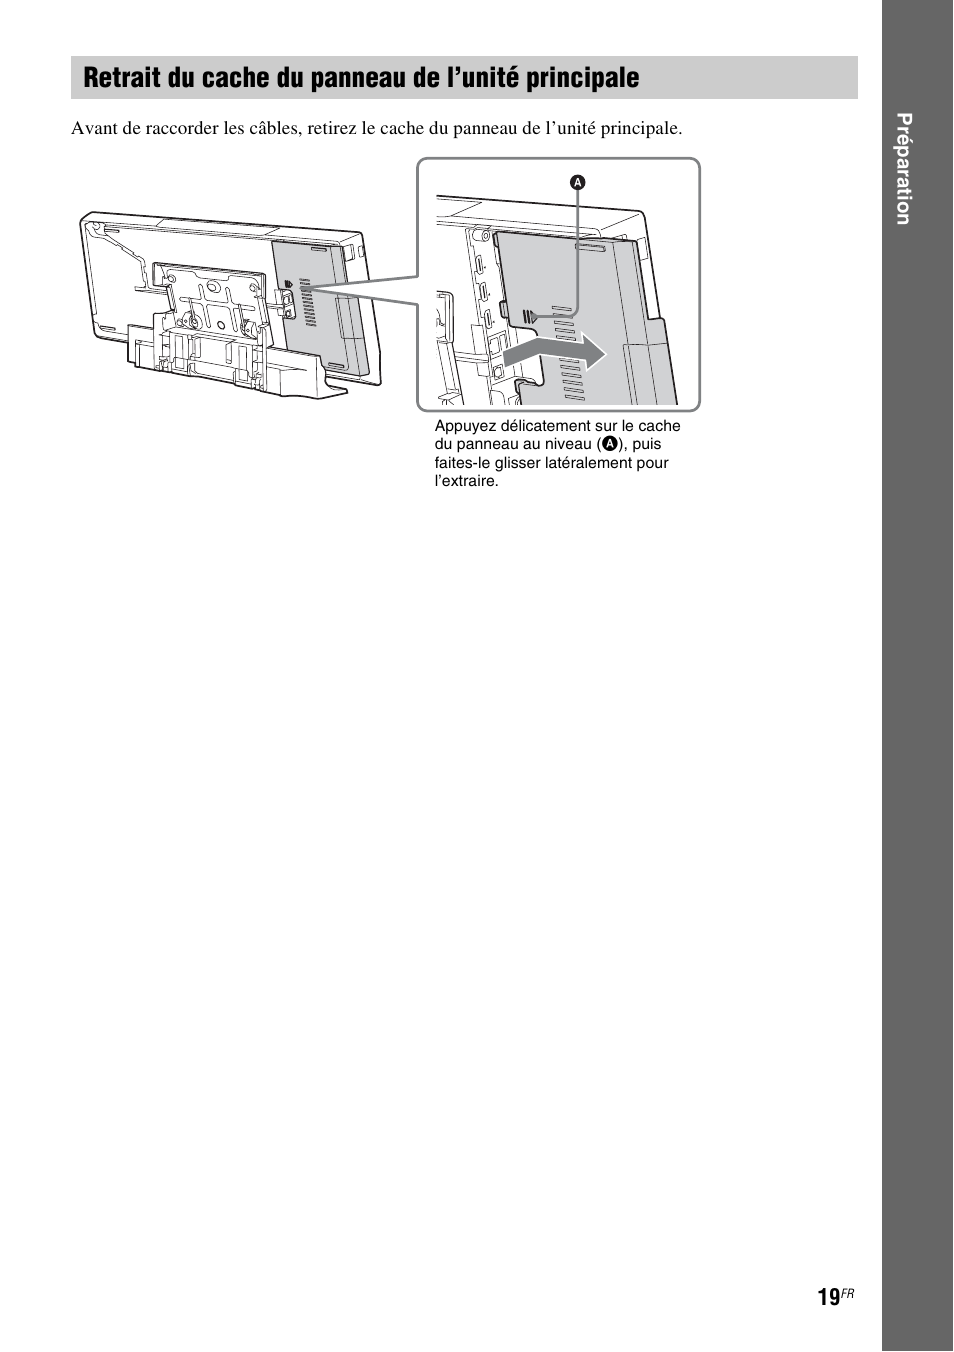 Retrait du cache du panneau de l’unité principale | Sony BDV-L600 Manuel d'utilisation | Page 19 / 88